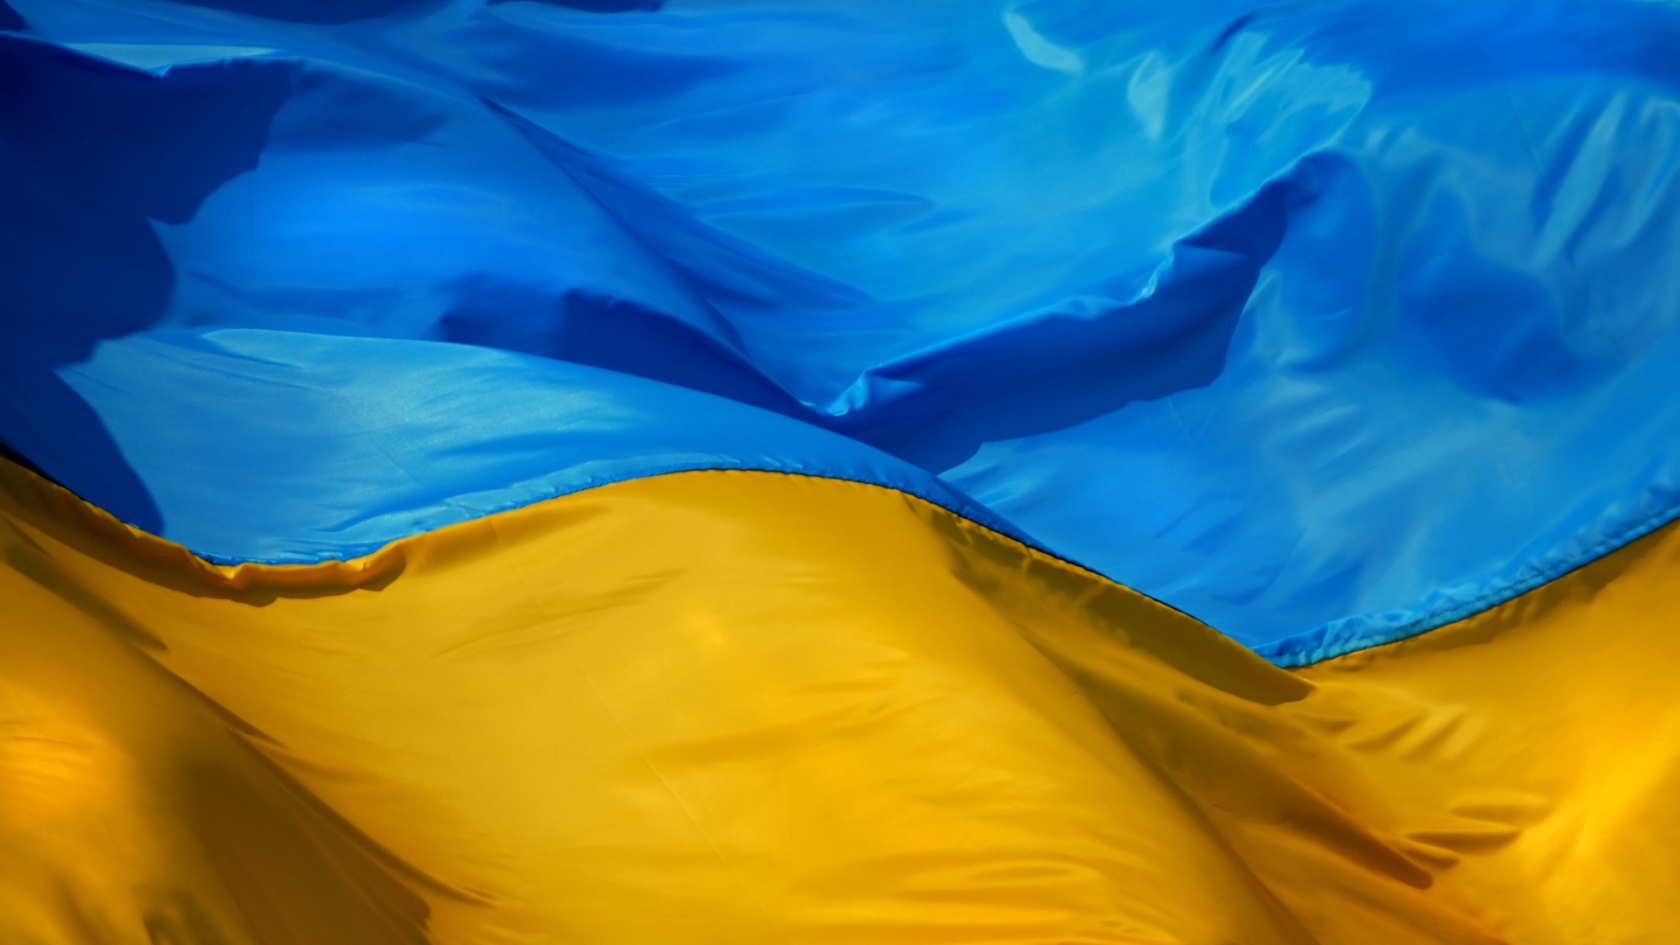 Ukraine Flag for 1680 x 945 HDTV resolution